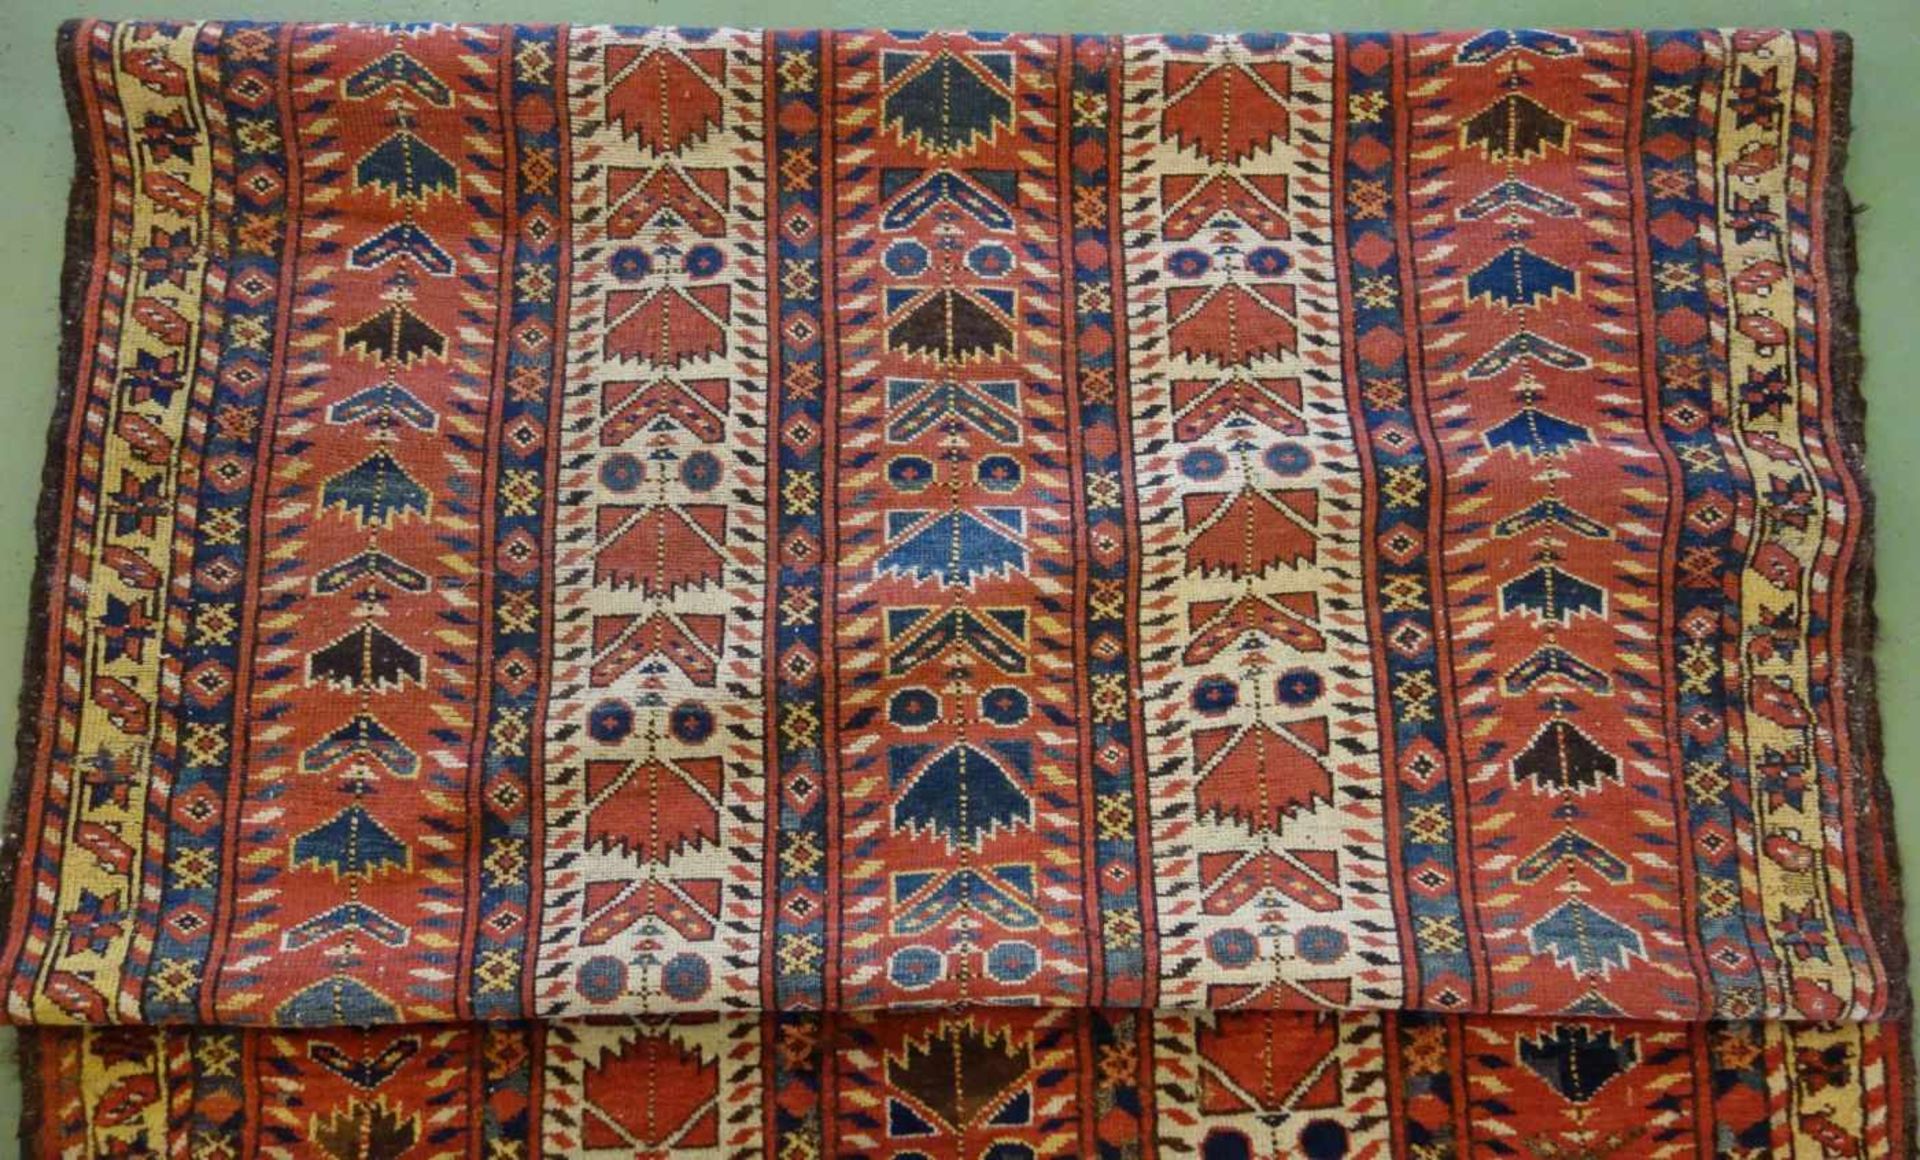 SCHMALER BESCHIR GEBETSTEPPICH / prayer rug, wohl 2. H. 19. Jh., Turkmenistan / Ersari-Beschir ( - Image 12 of 24